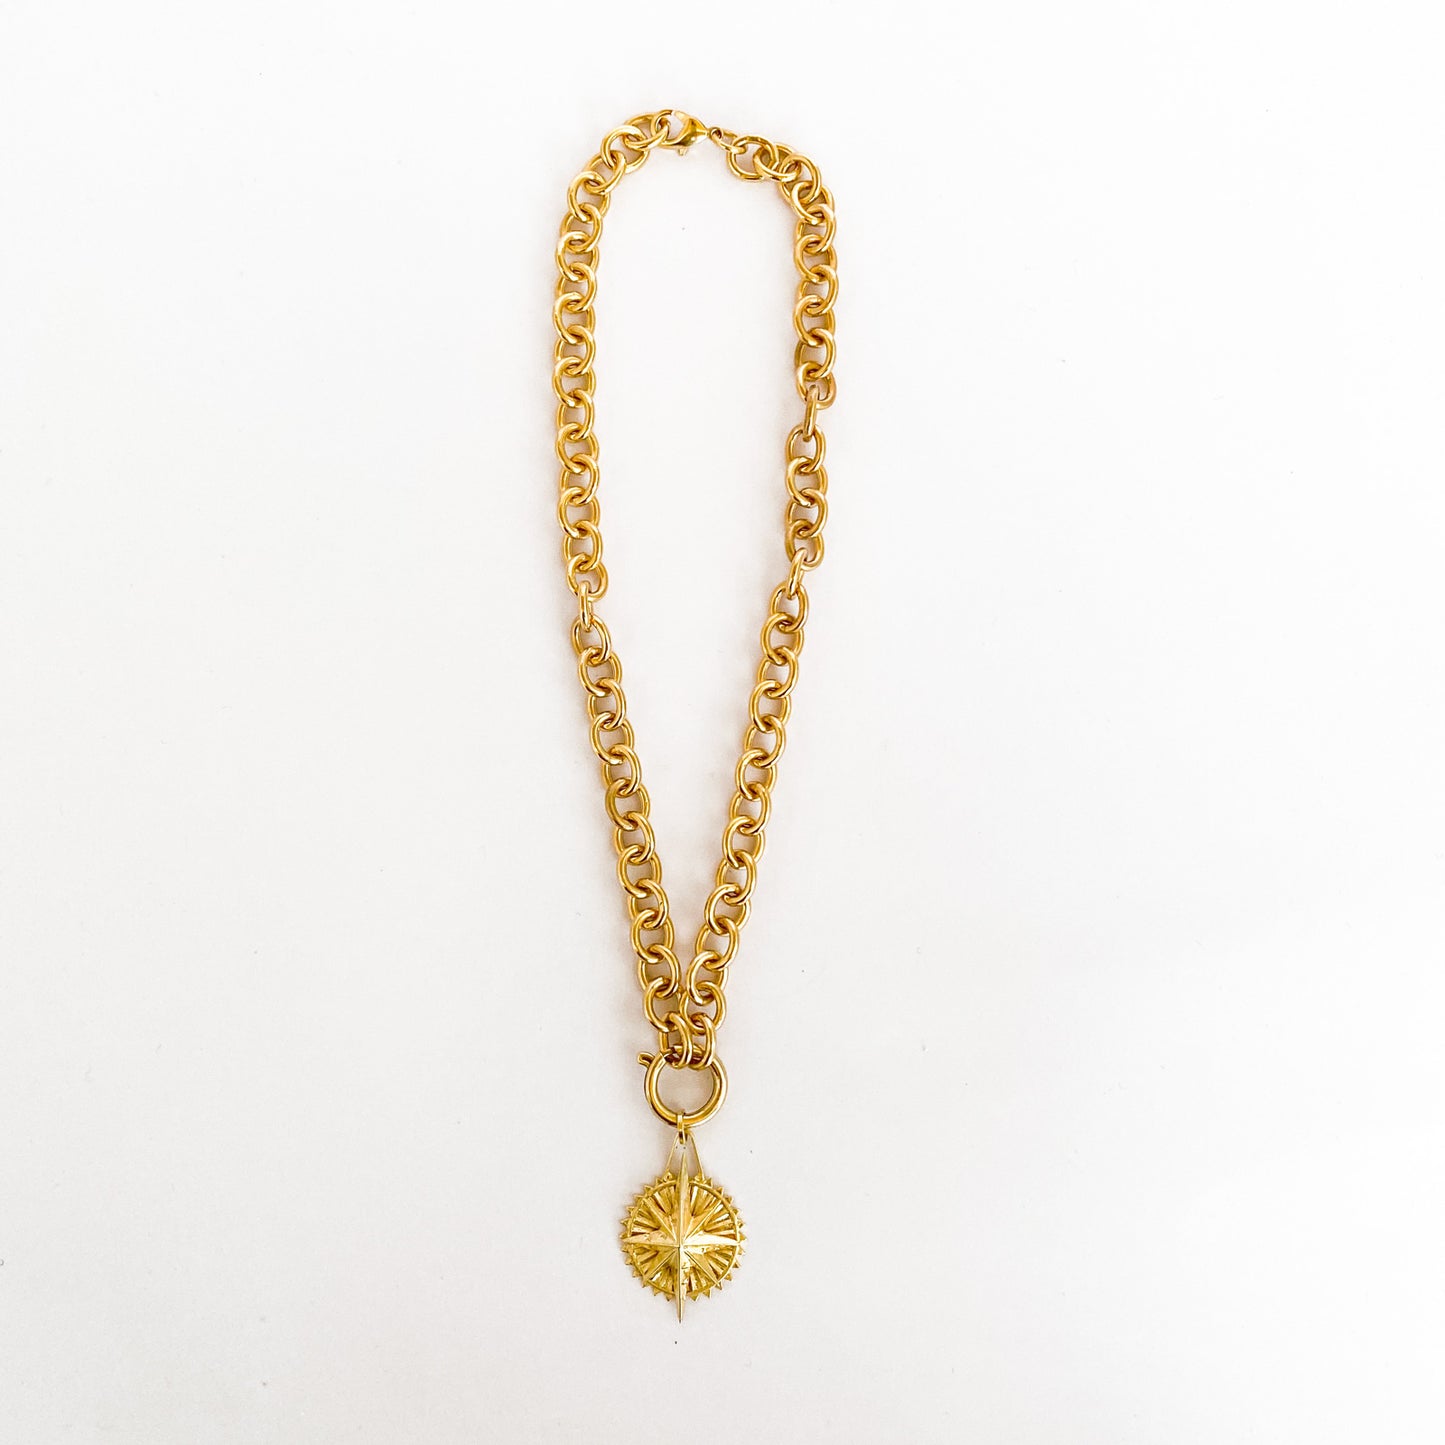 cadena gruesa dorada y medallon de estrella joyas misticas diseñadores colombianos